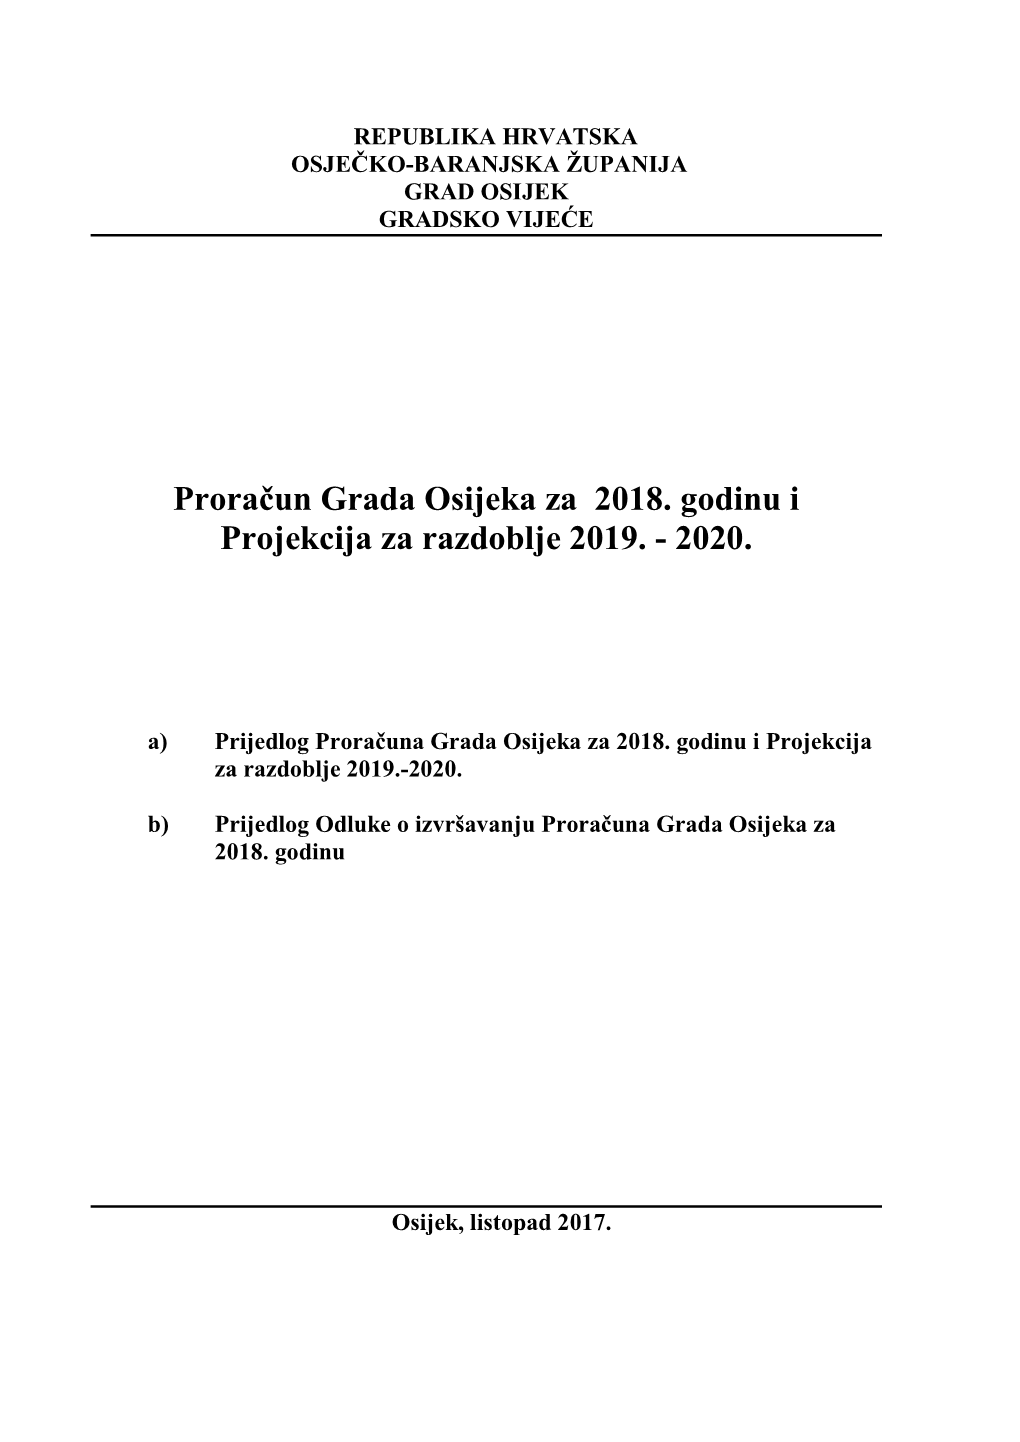 Proračun Grada Osijeka Za 2018. Godinu I Projekcija Za Razdoblje 2019